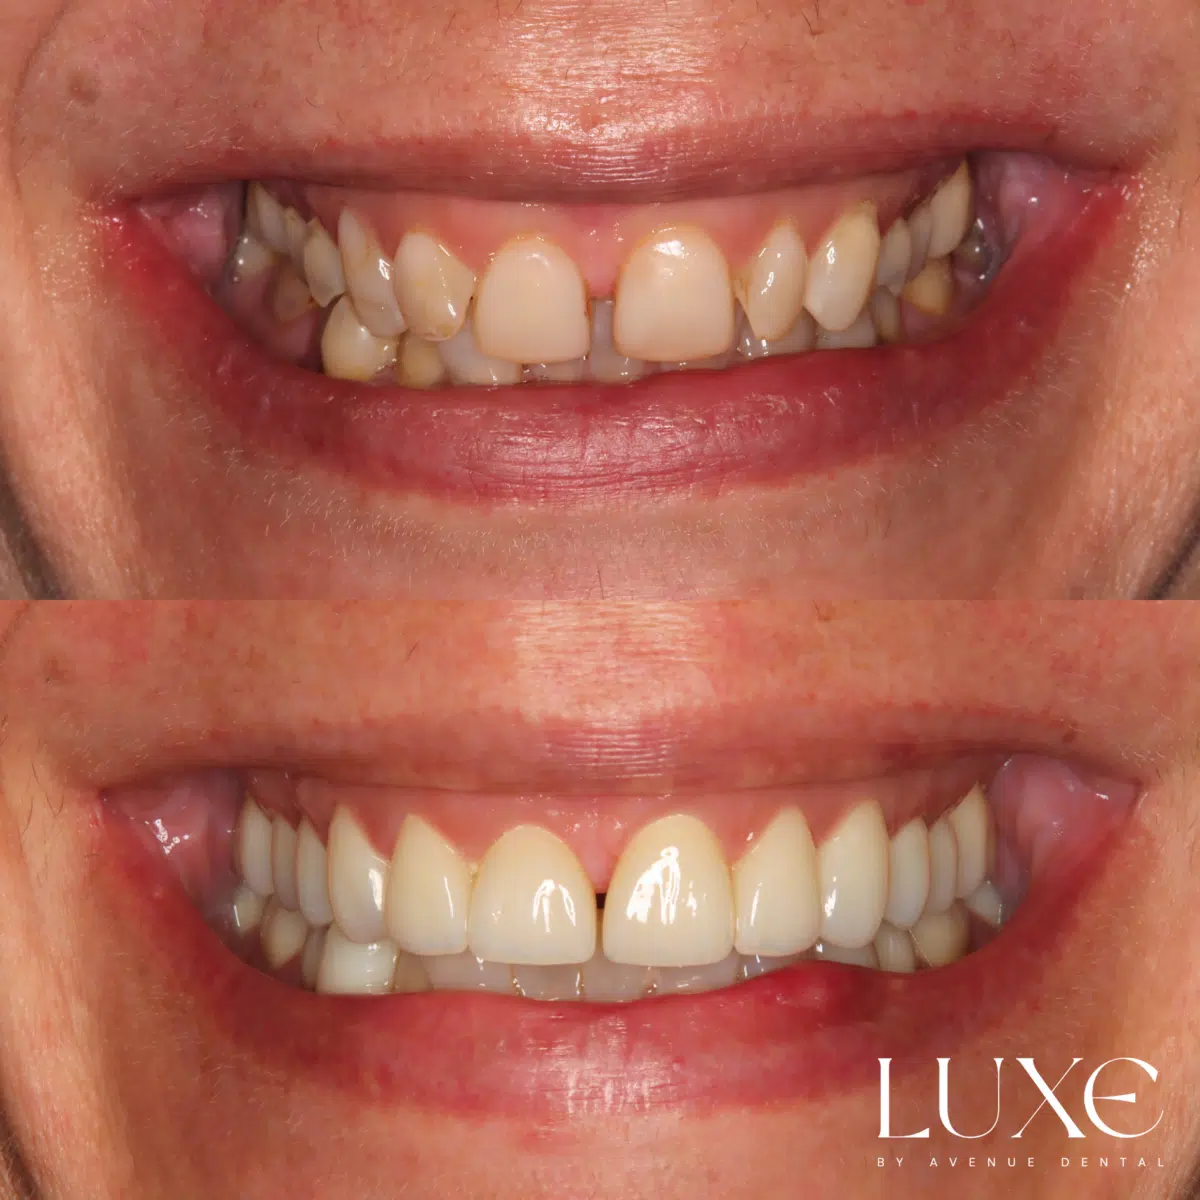 Luxe Dental Veneers Before After (3)